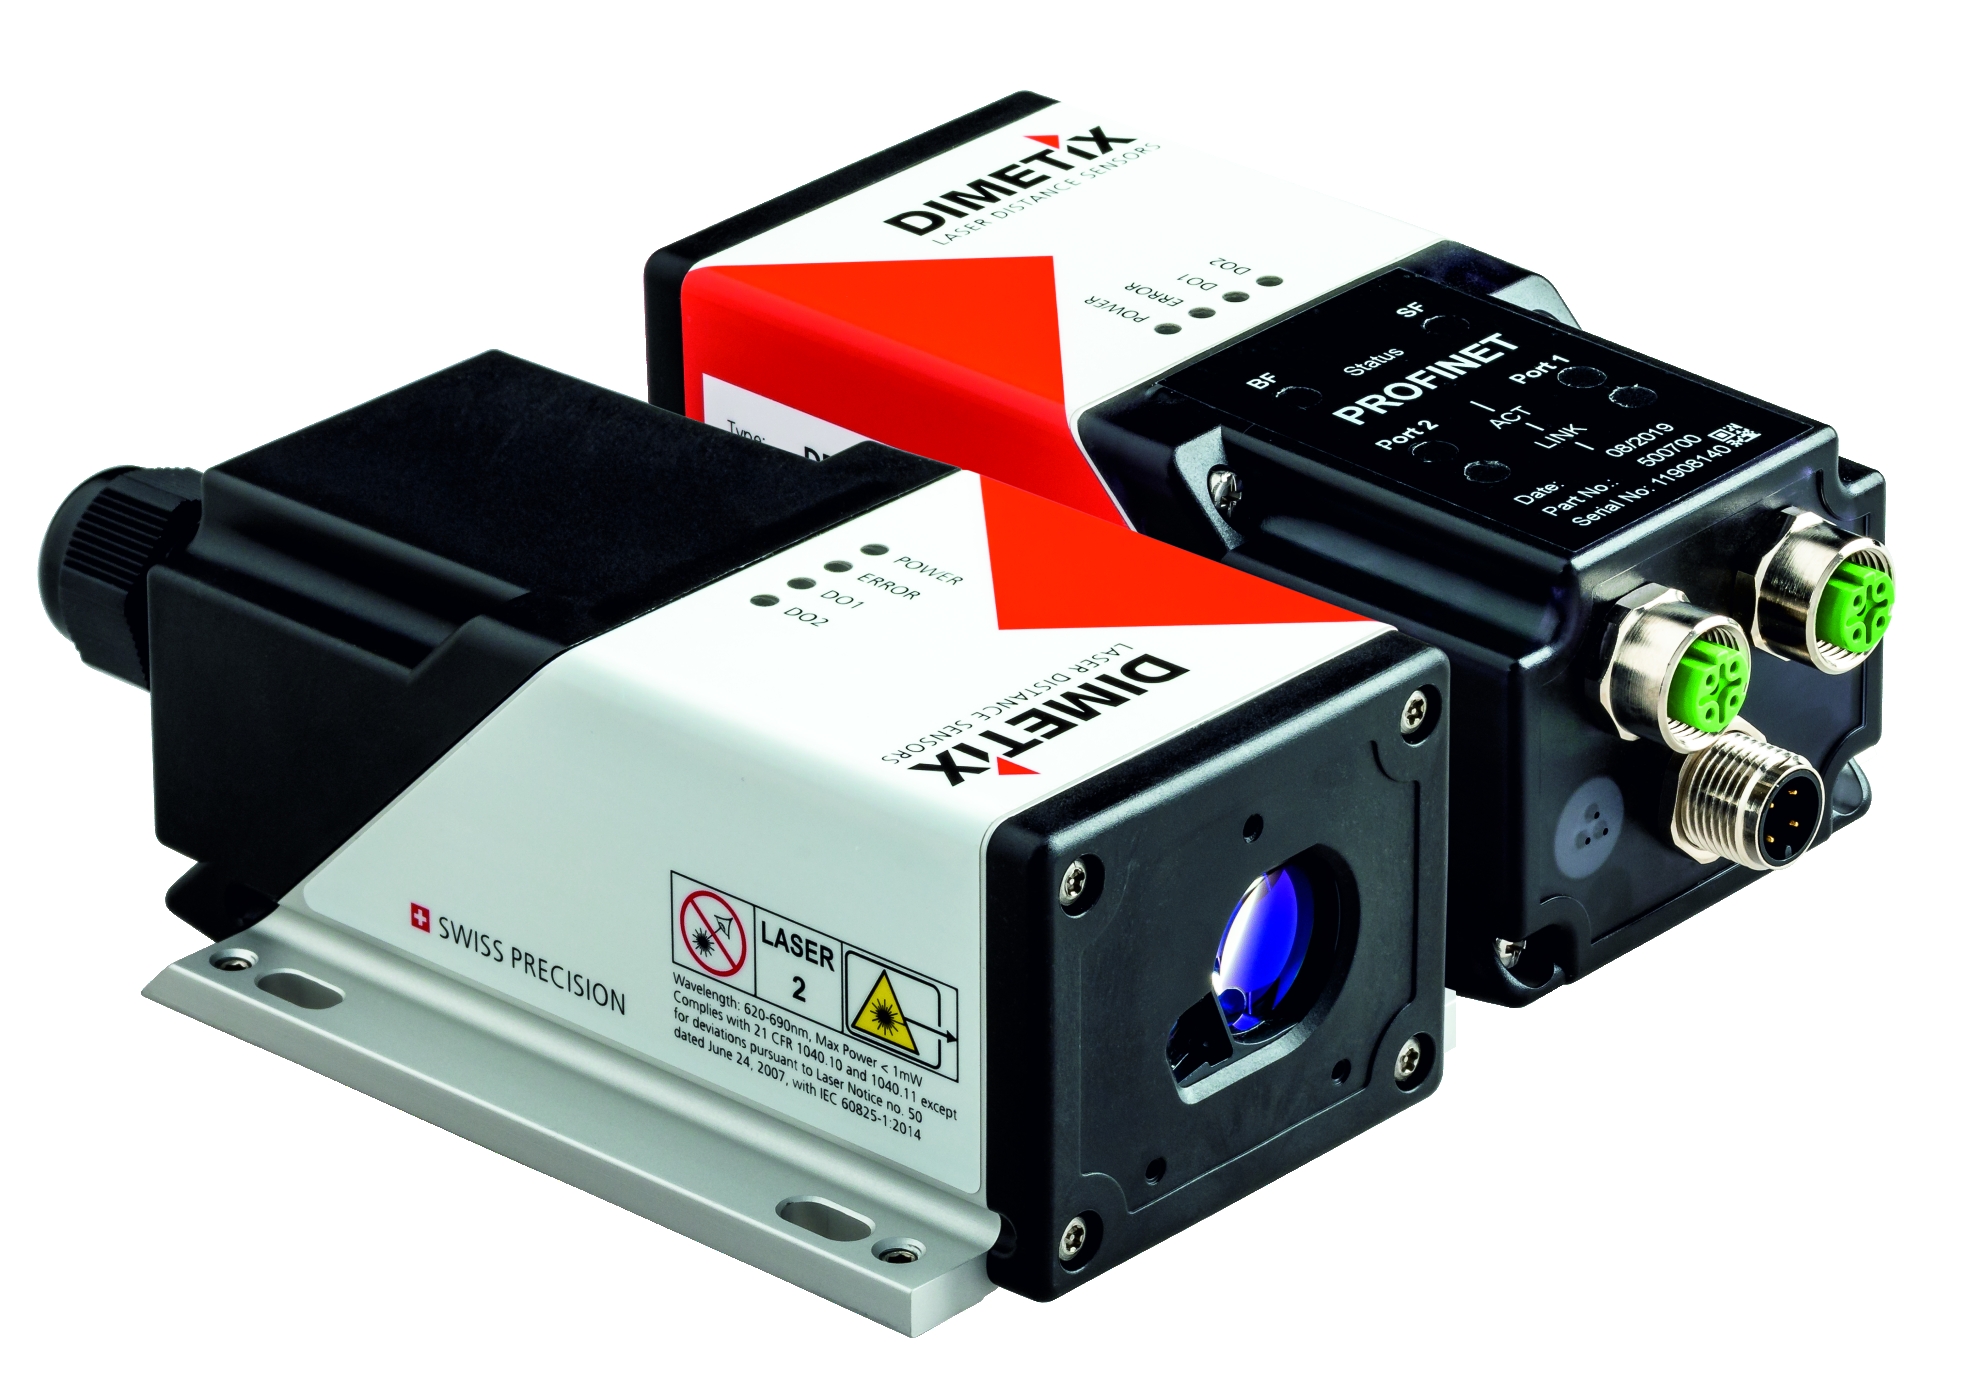 Laserdistanzsensoren für schnelle und genaue Messergebnisse bis 500 m. Bild: Dimetix